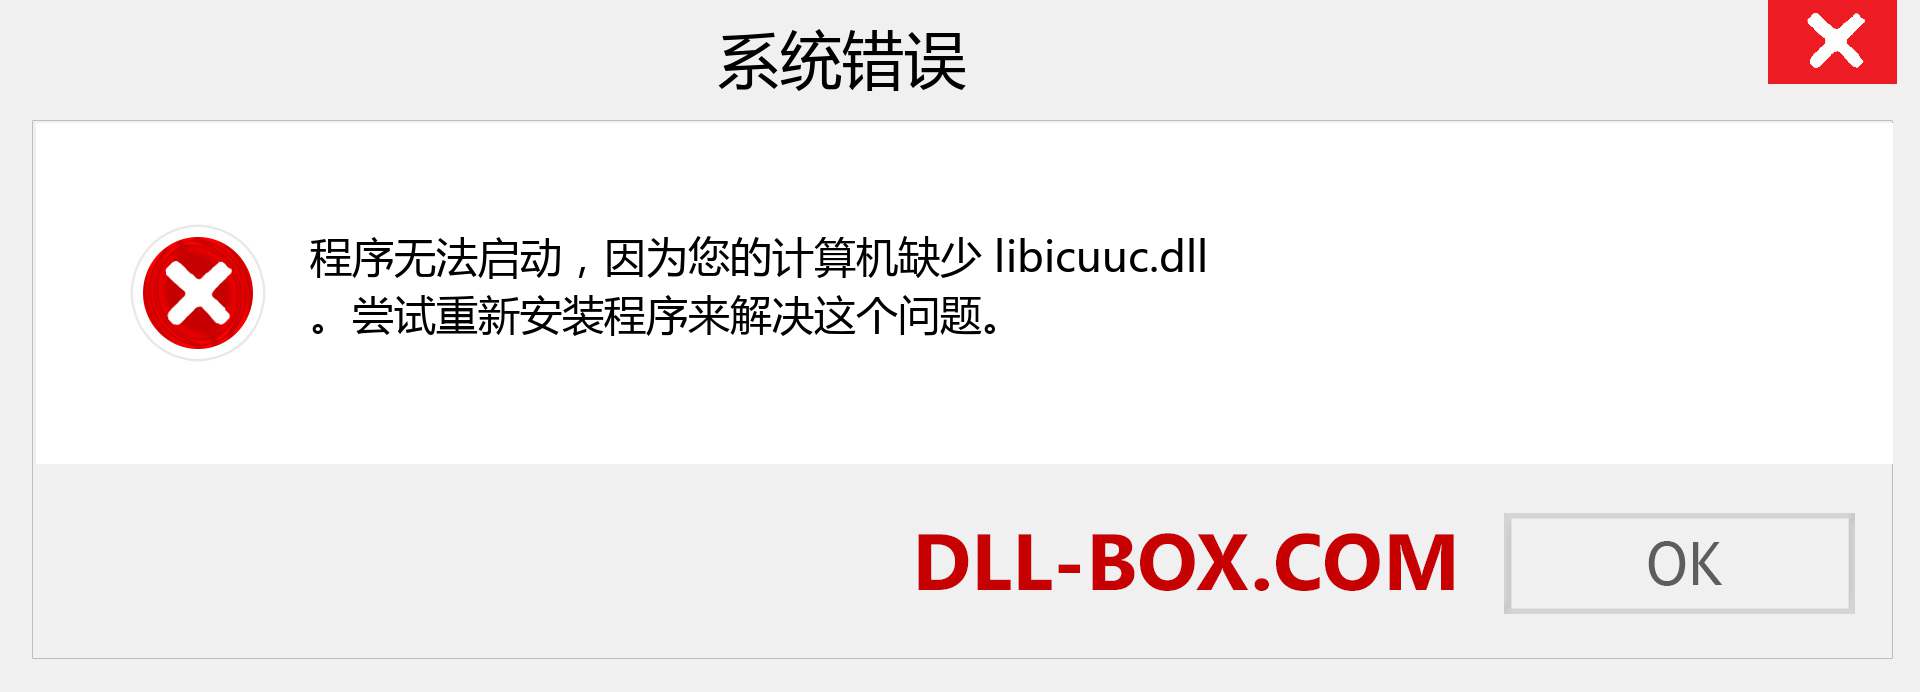 libicuuc.dll 文件丢失？。 适用于 Windows 7、8、10 的下载 - 修复 Windows、照片、图像上的 libicuuc dll 丢失错误